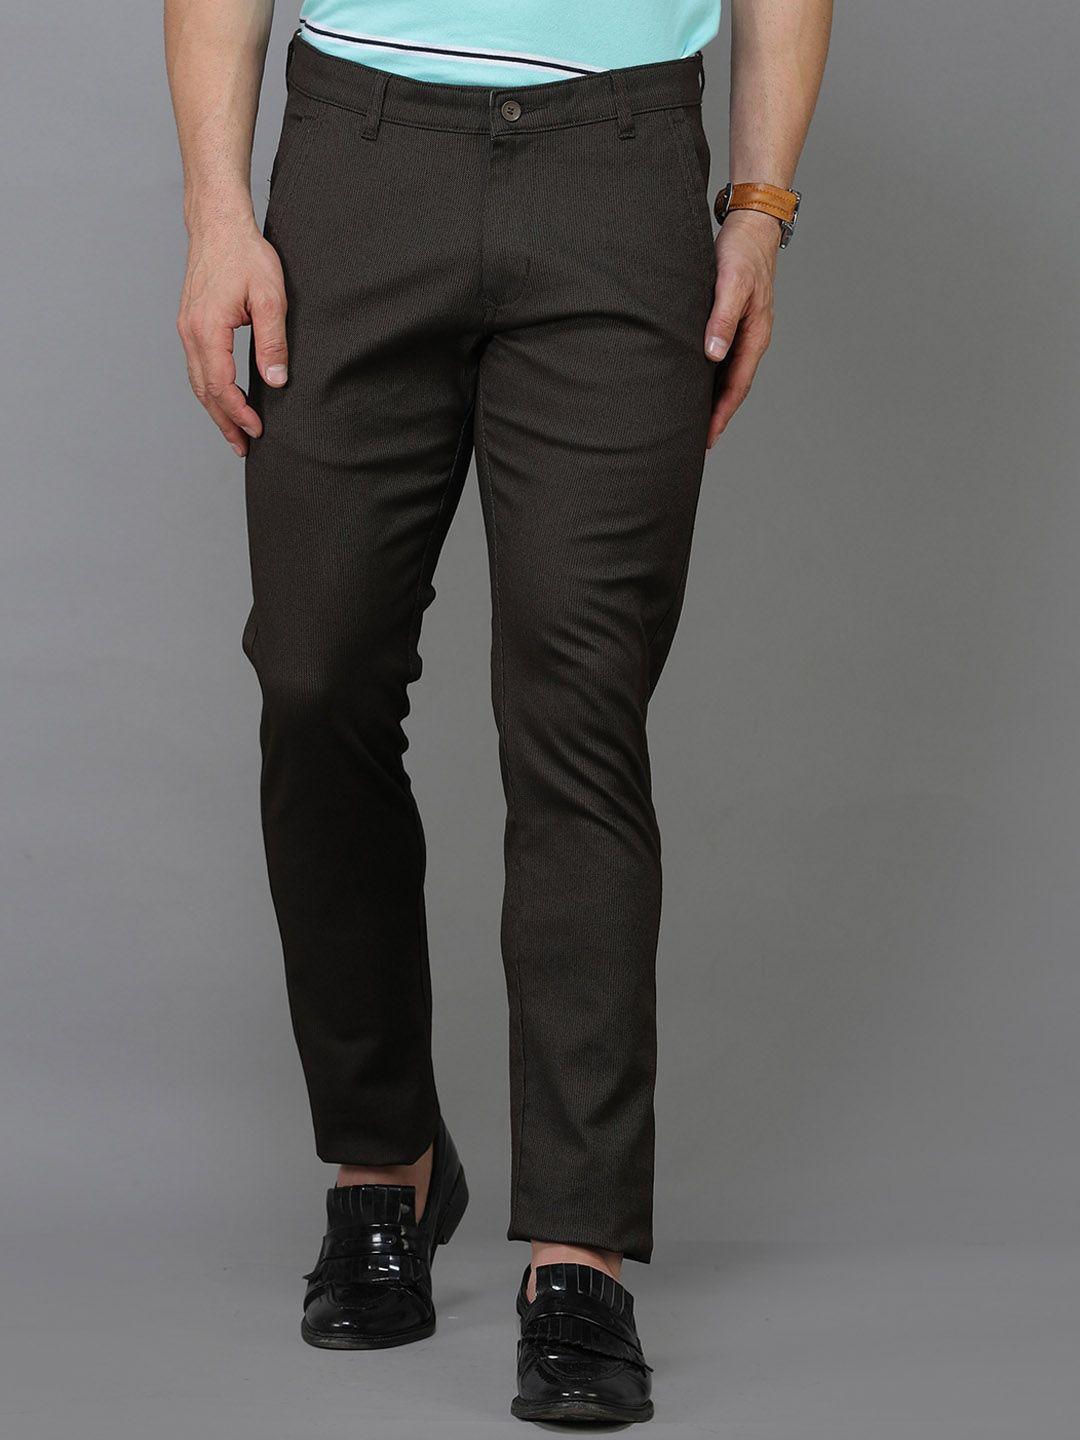 tqs-men-comfort-mid-rise-pure-cotton-trousers